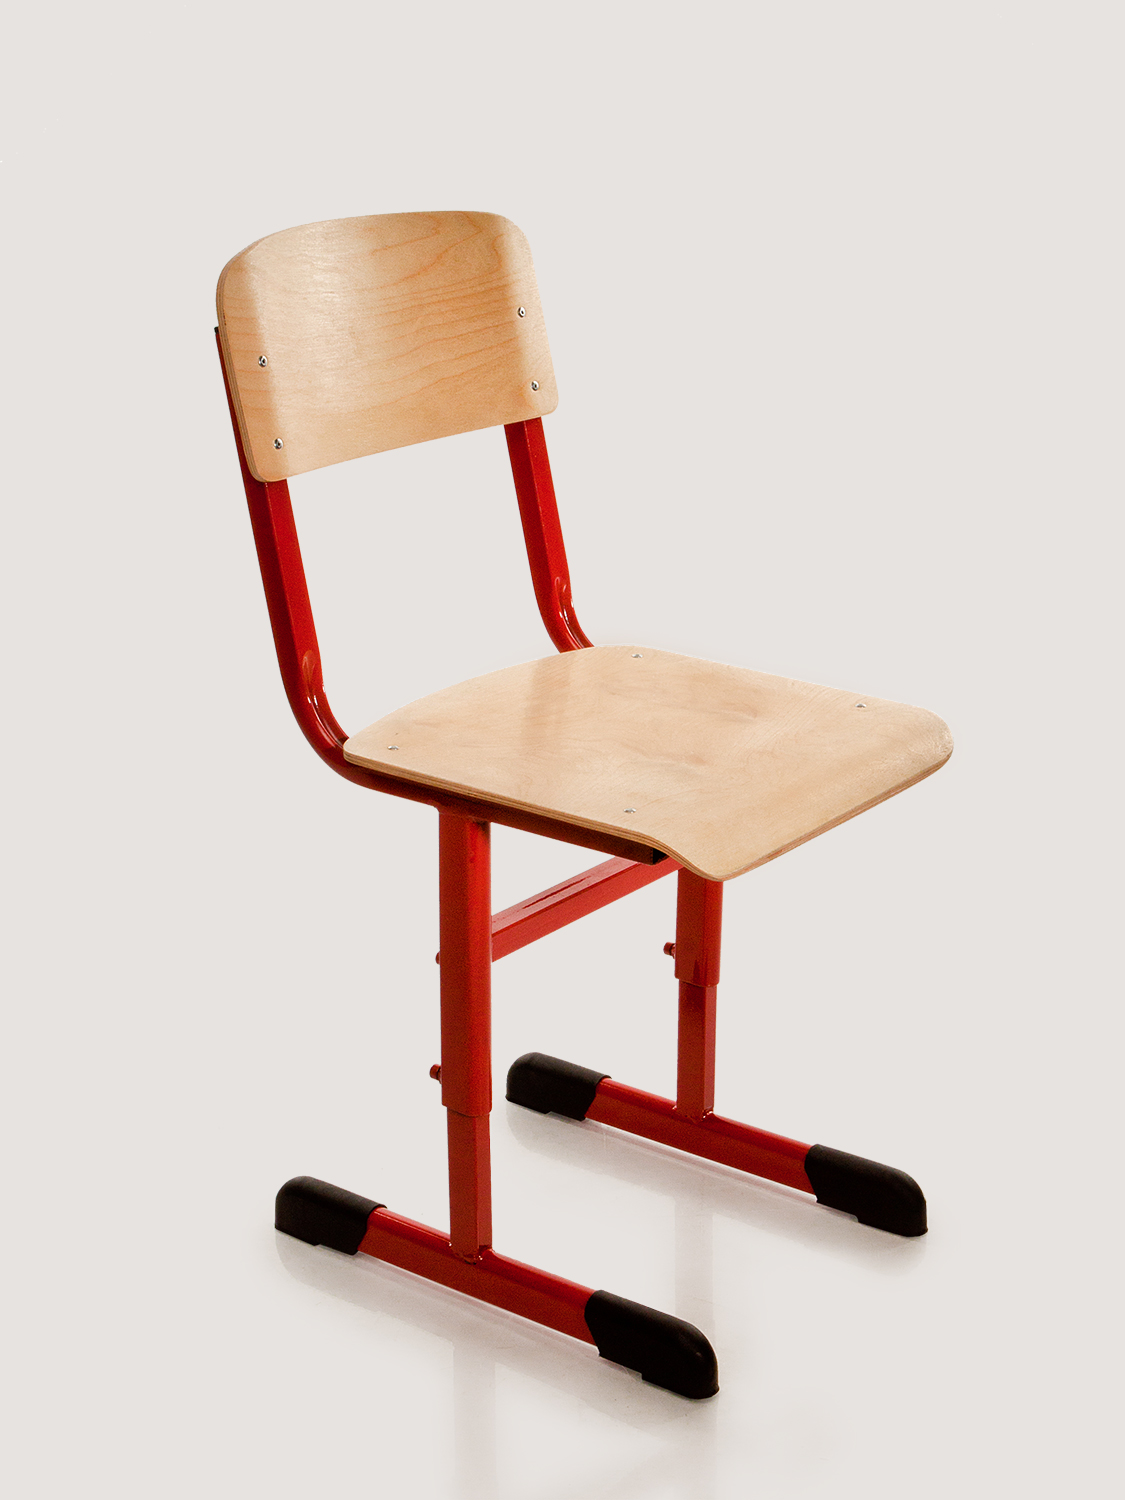 ростовые группы школьных стульев